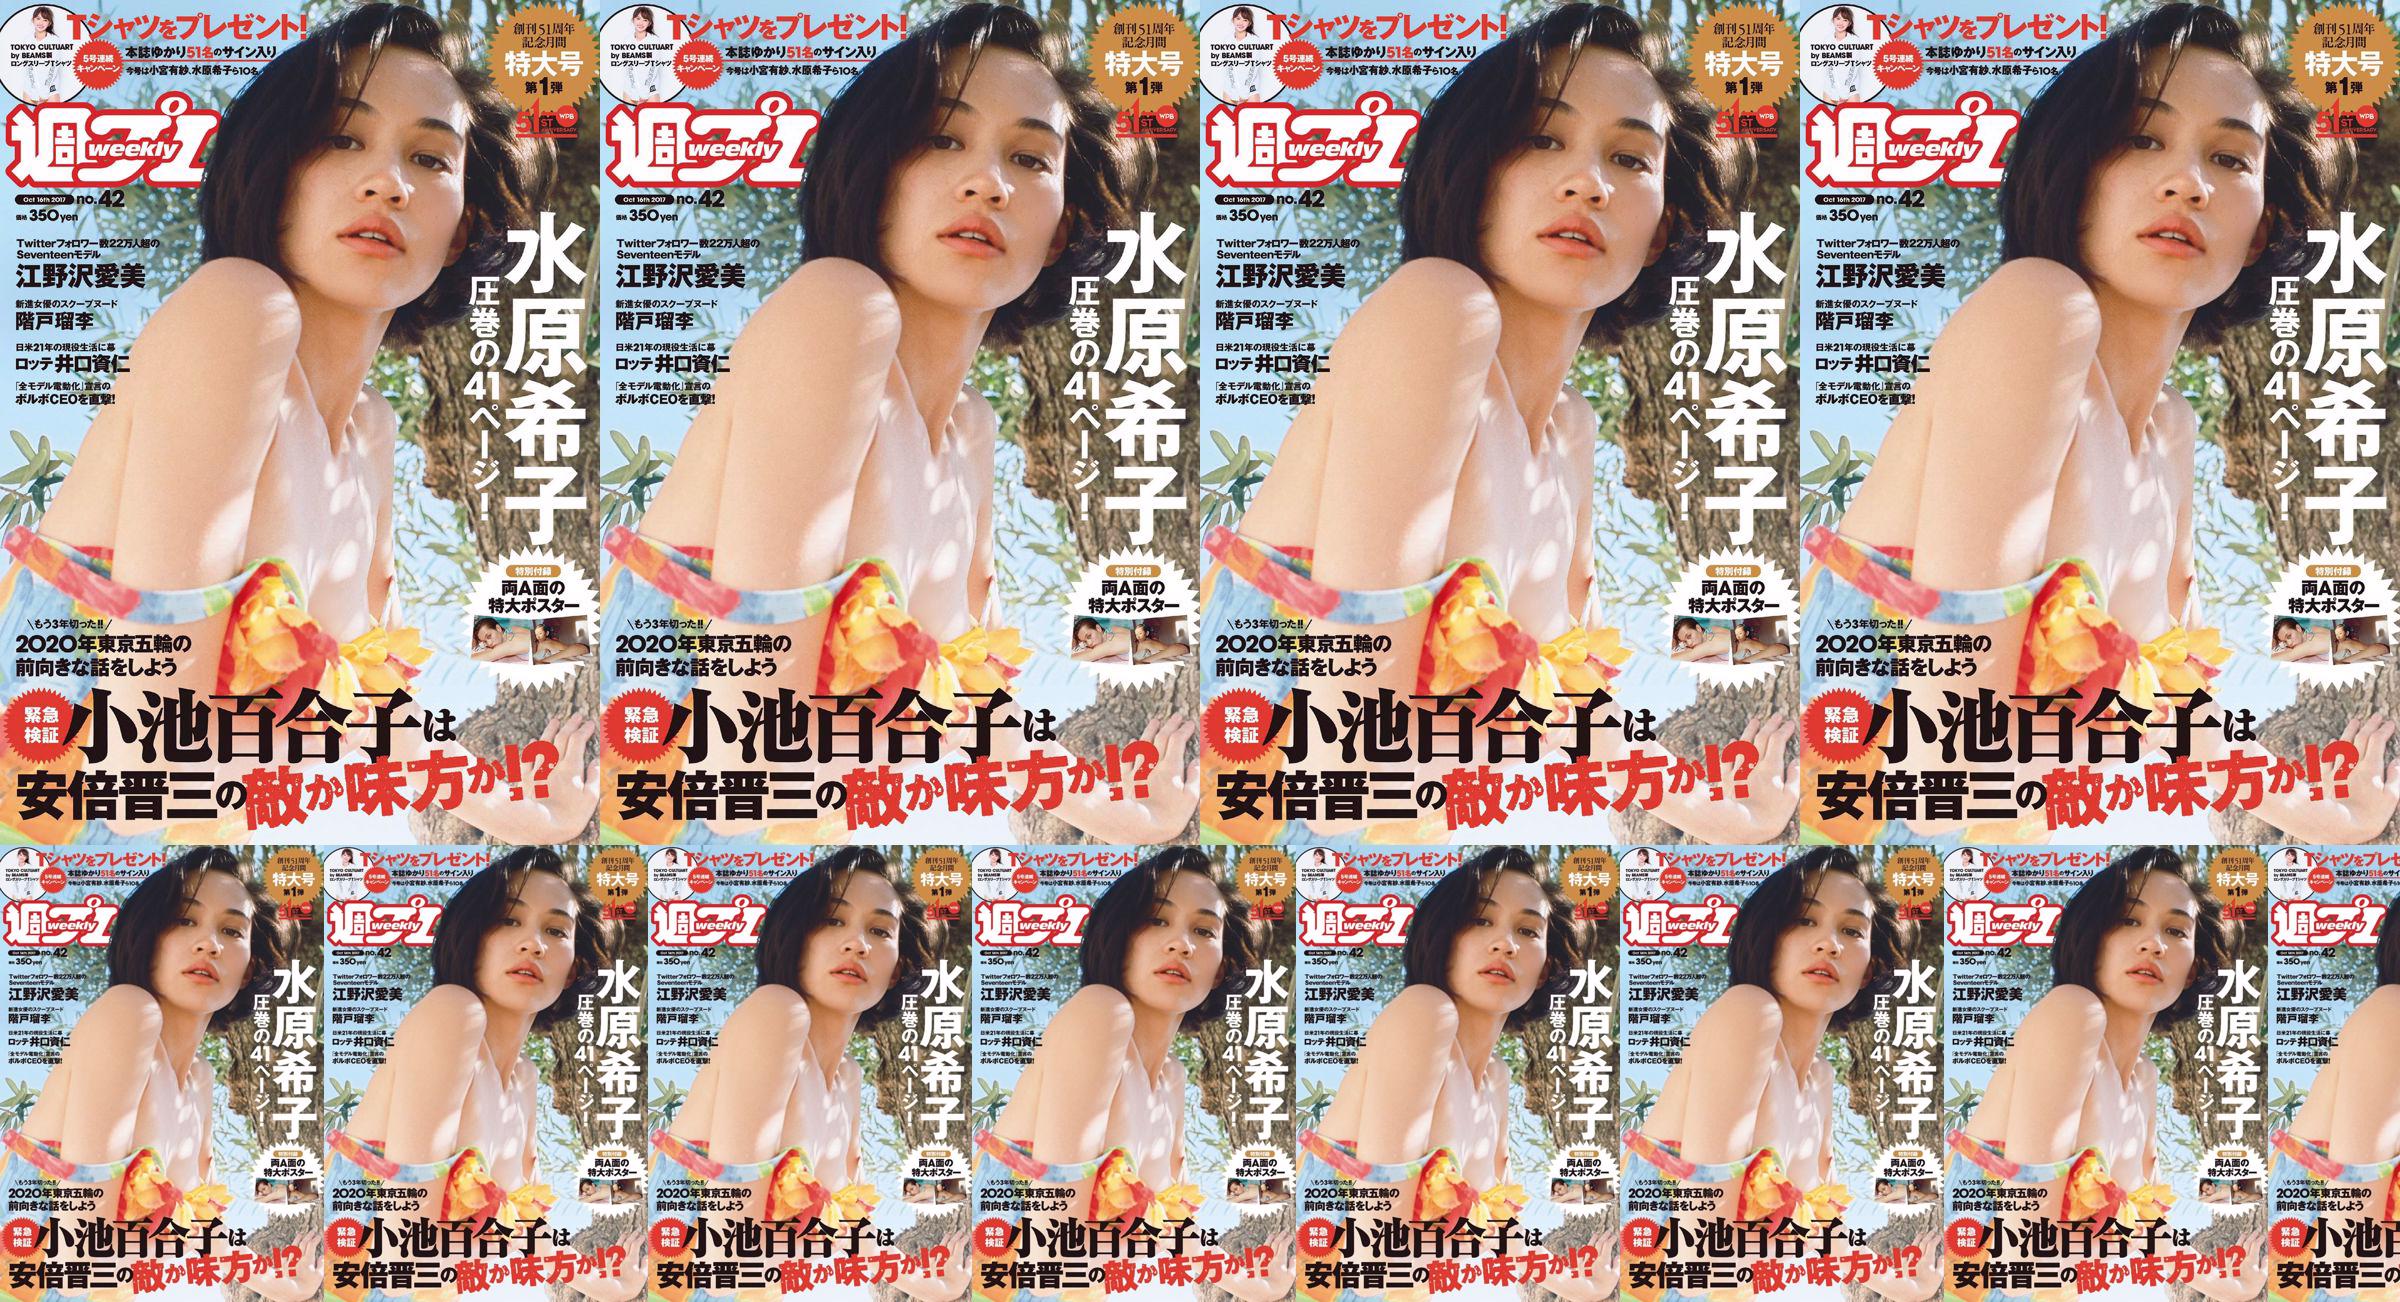 Kiko Mizuhara Manami Enosawa Serina Fukui Miu Nakamura Ruri Shinato [Weekly Playboy] 2017 No.42 Photo Magazine No.d3eaf3 Trang 3